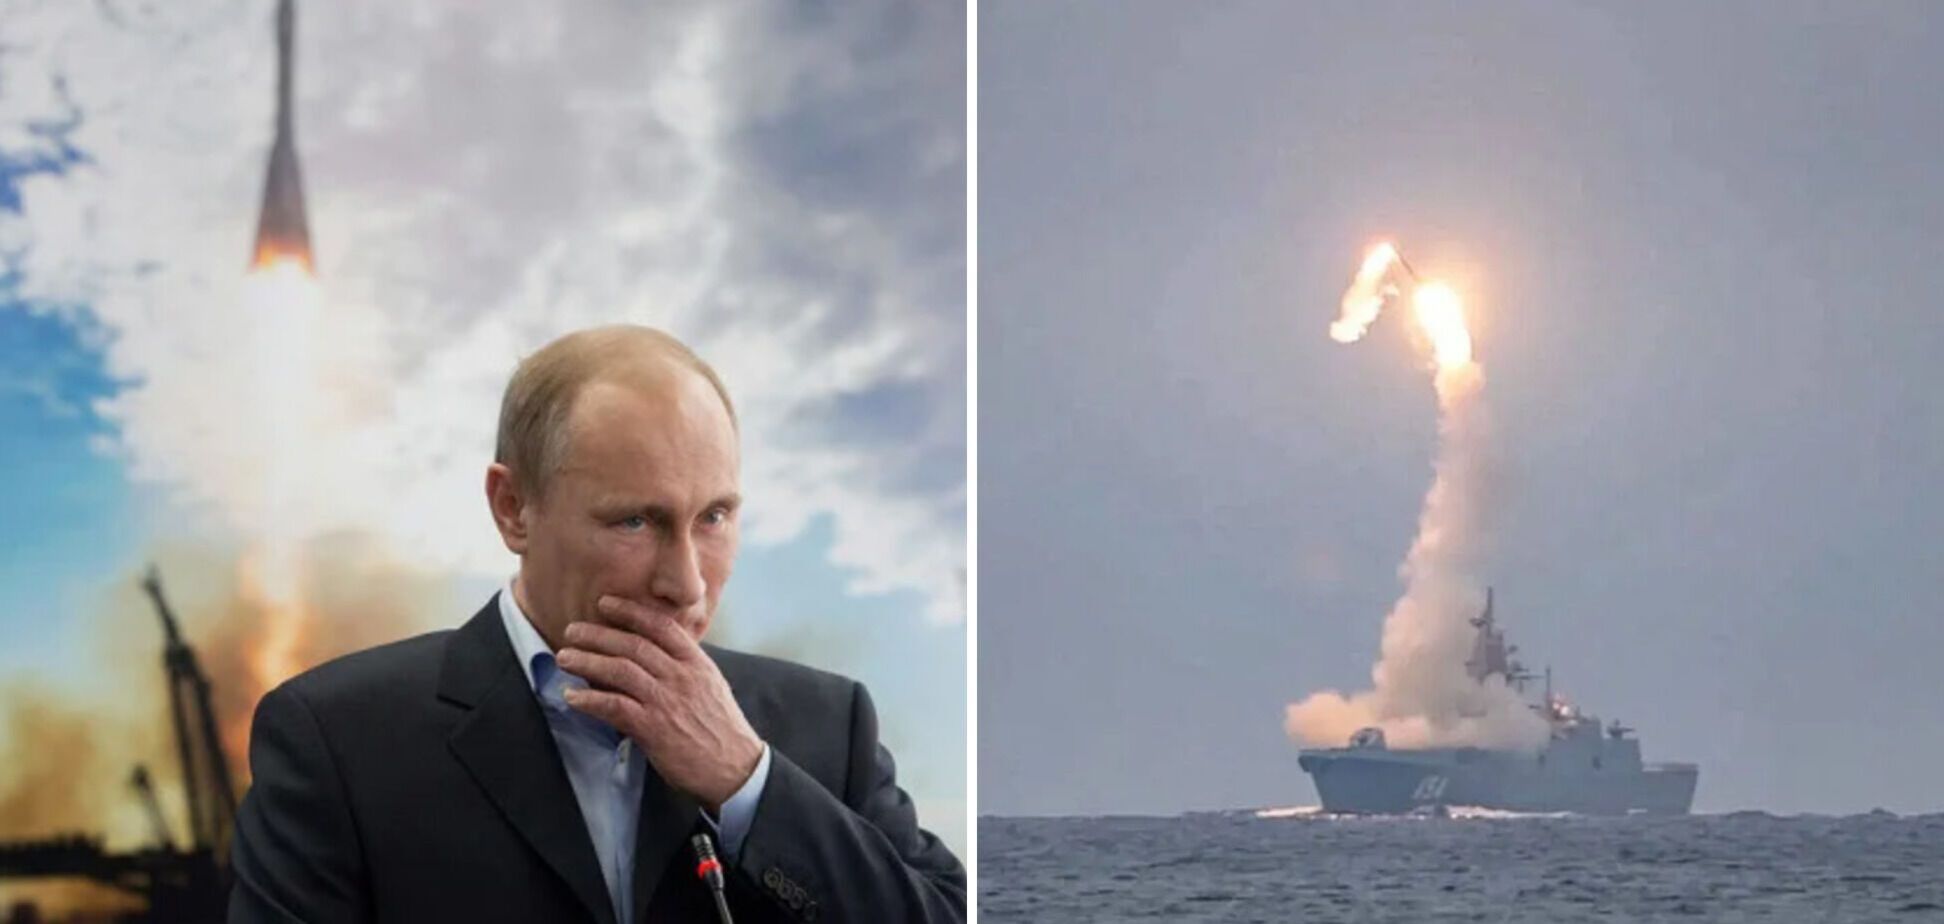 'Аналогів нема': Путін похвалився російським 'Цирконом' і заговорив  про захист Росії від загроз. Відео 